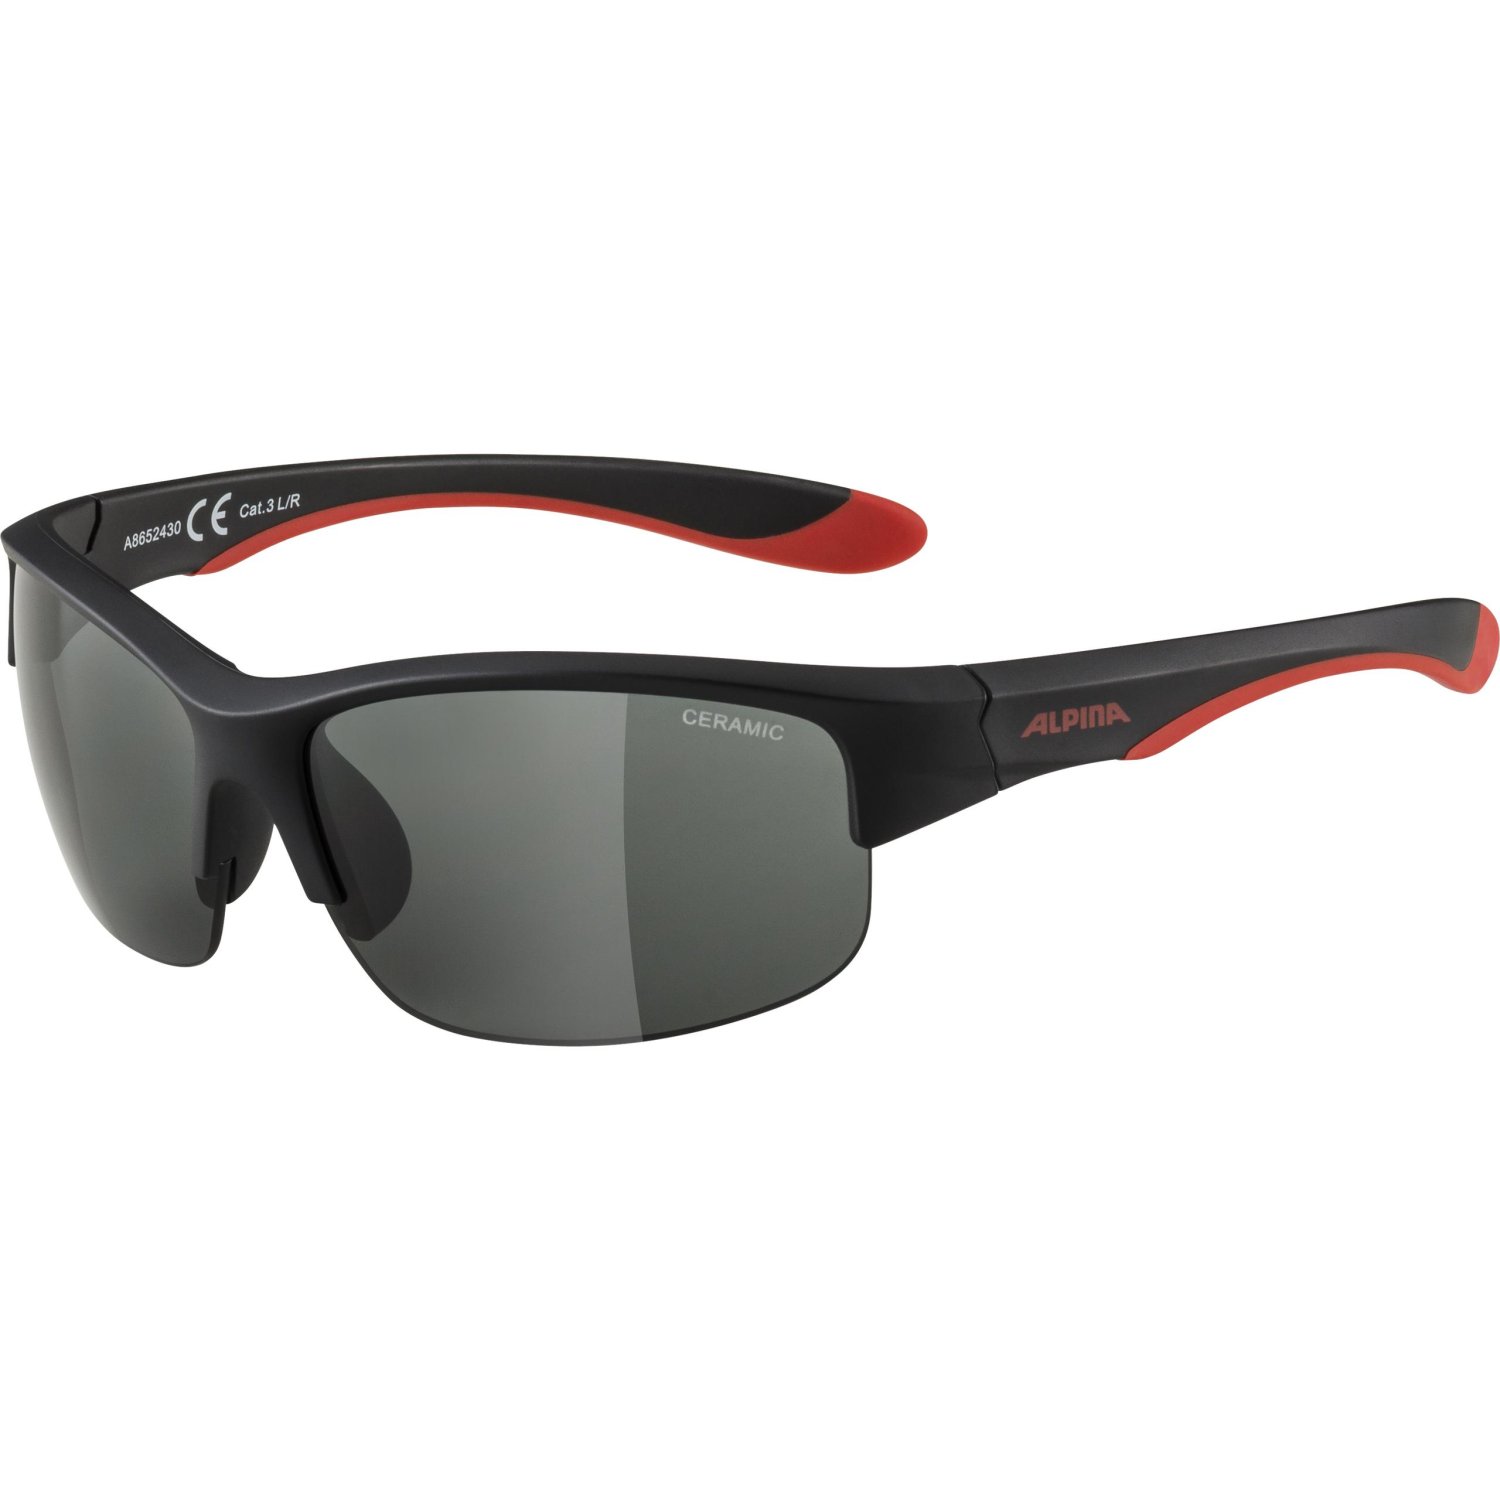 Очки велосипедные Alpina Flexxy Youth HR, солнцезащитные, детские, Black Matt Red/Black, A86524_30 солнцезащитные очки hipsterkid форма авиатор